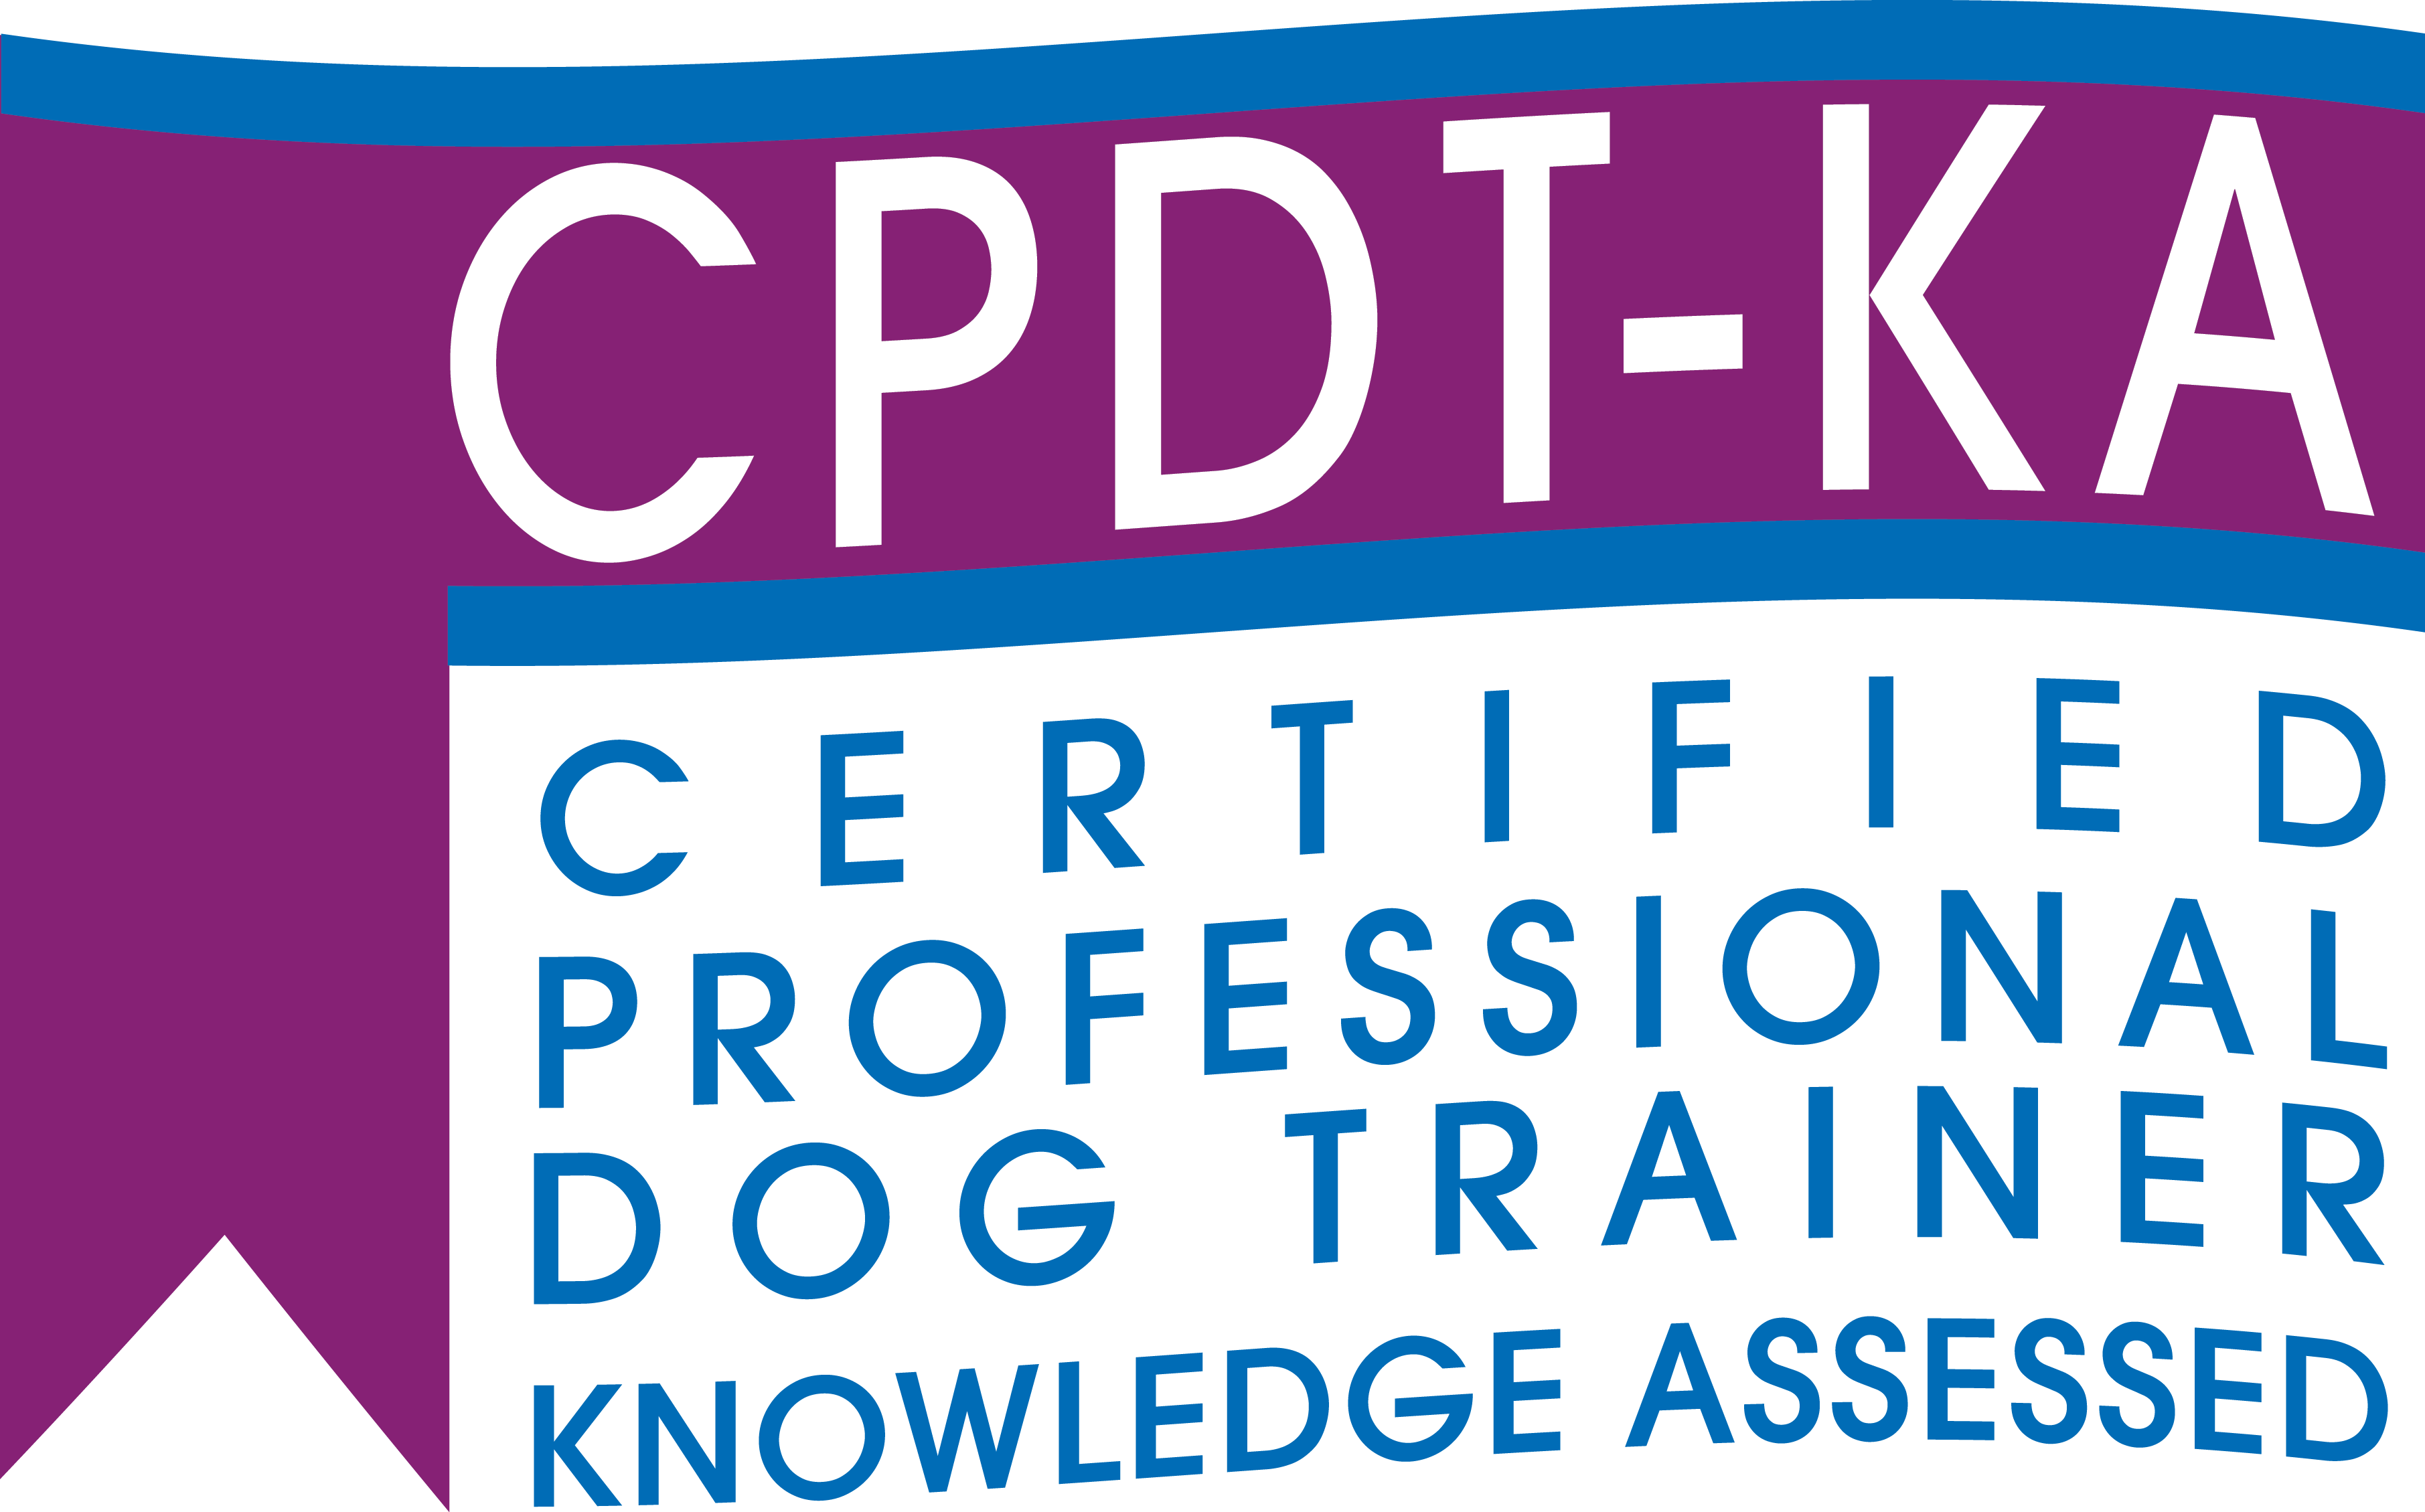 Cpdt Logo - Cpdt Ka Logo A Professional Dog Trainer